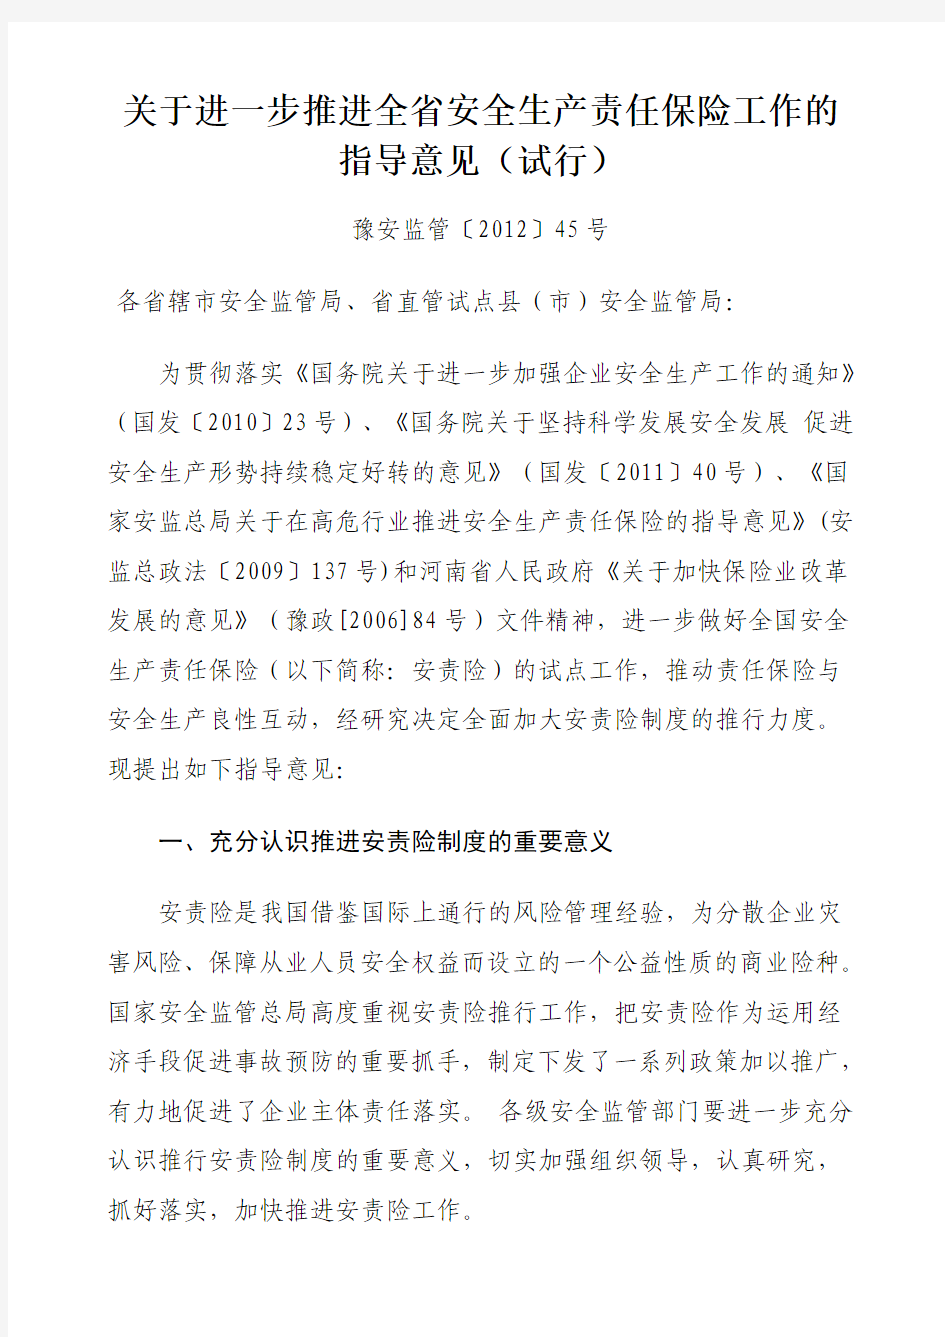 河南省安监局关于进一步推进全省安全生产责任保险工作的指导意见(试行)